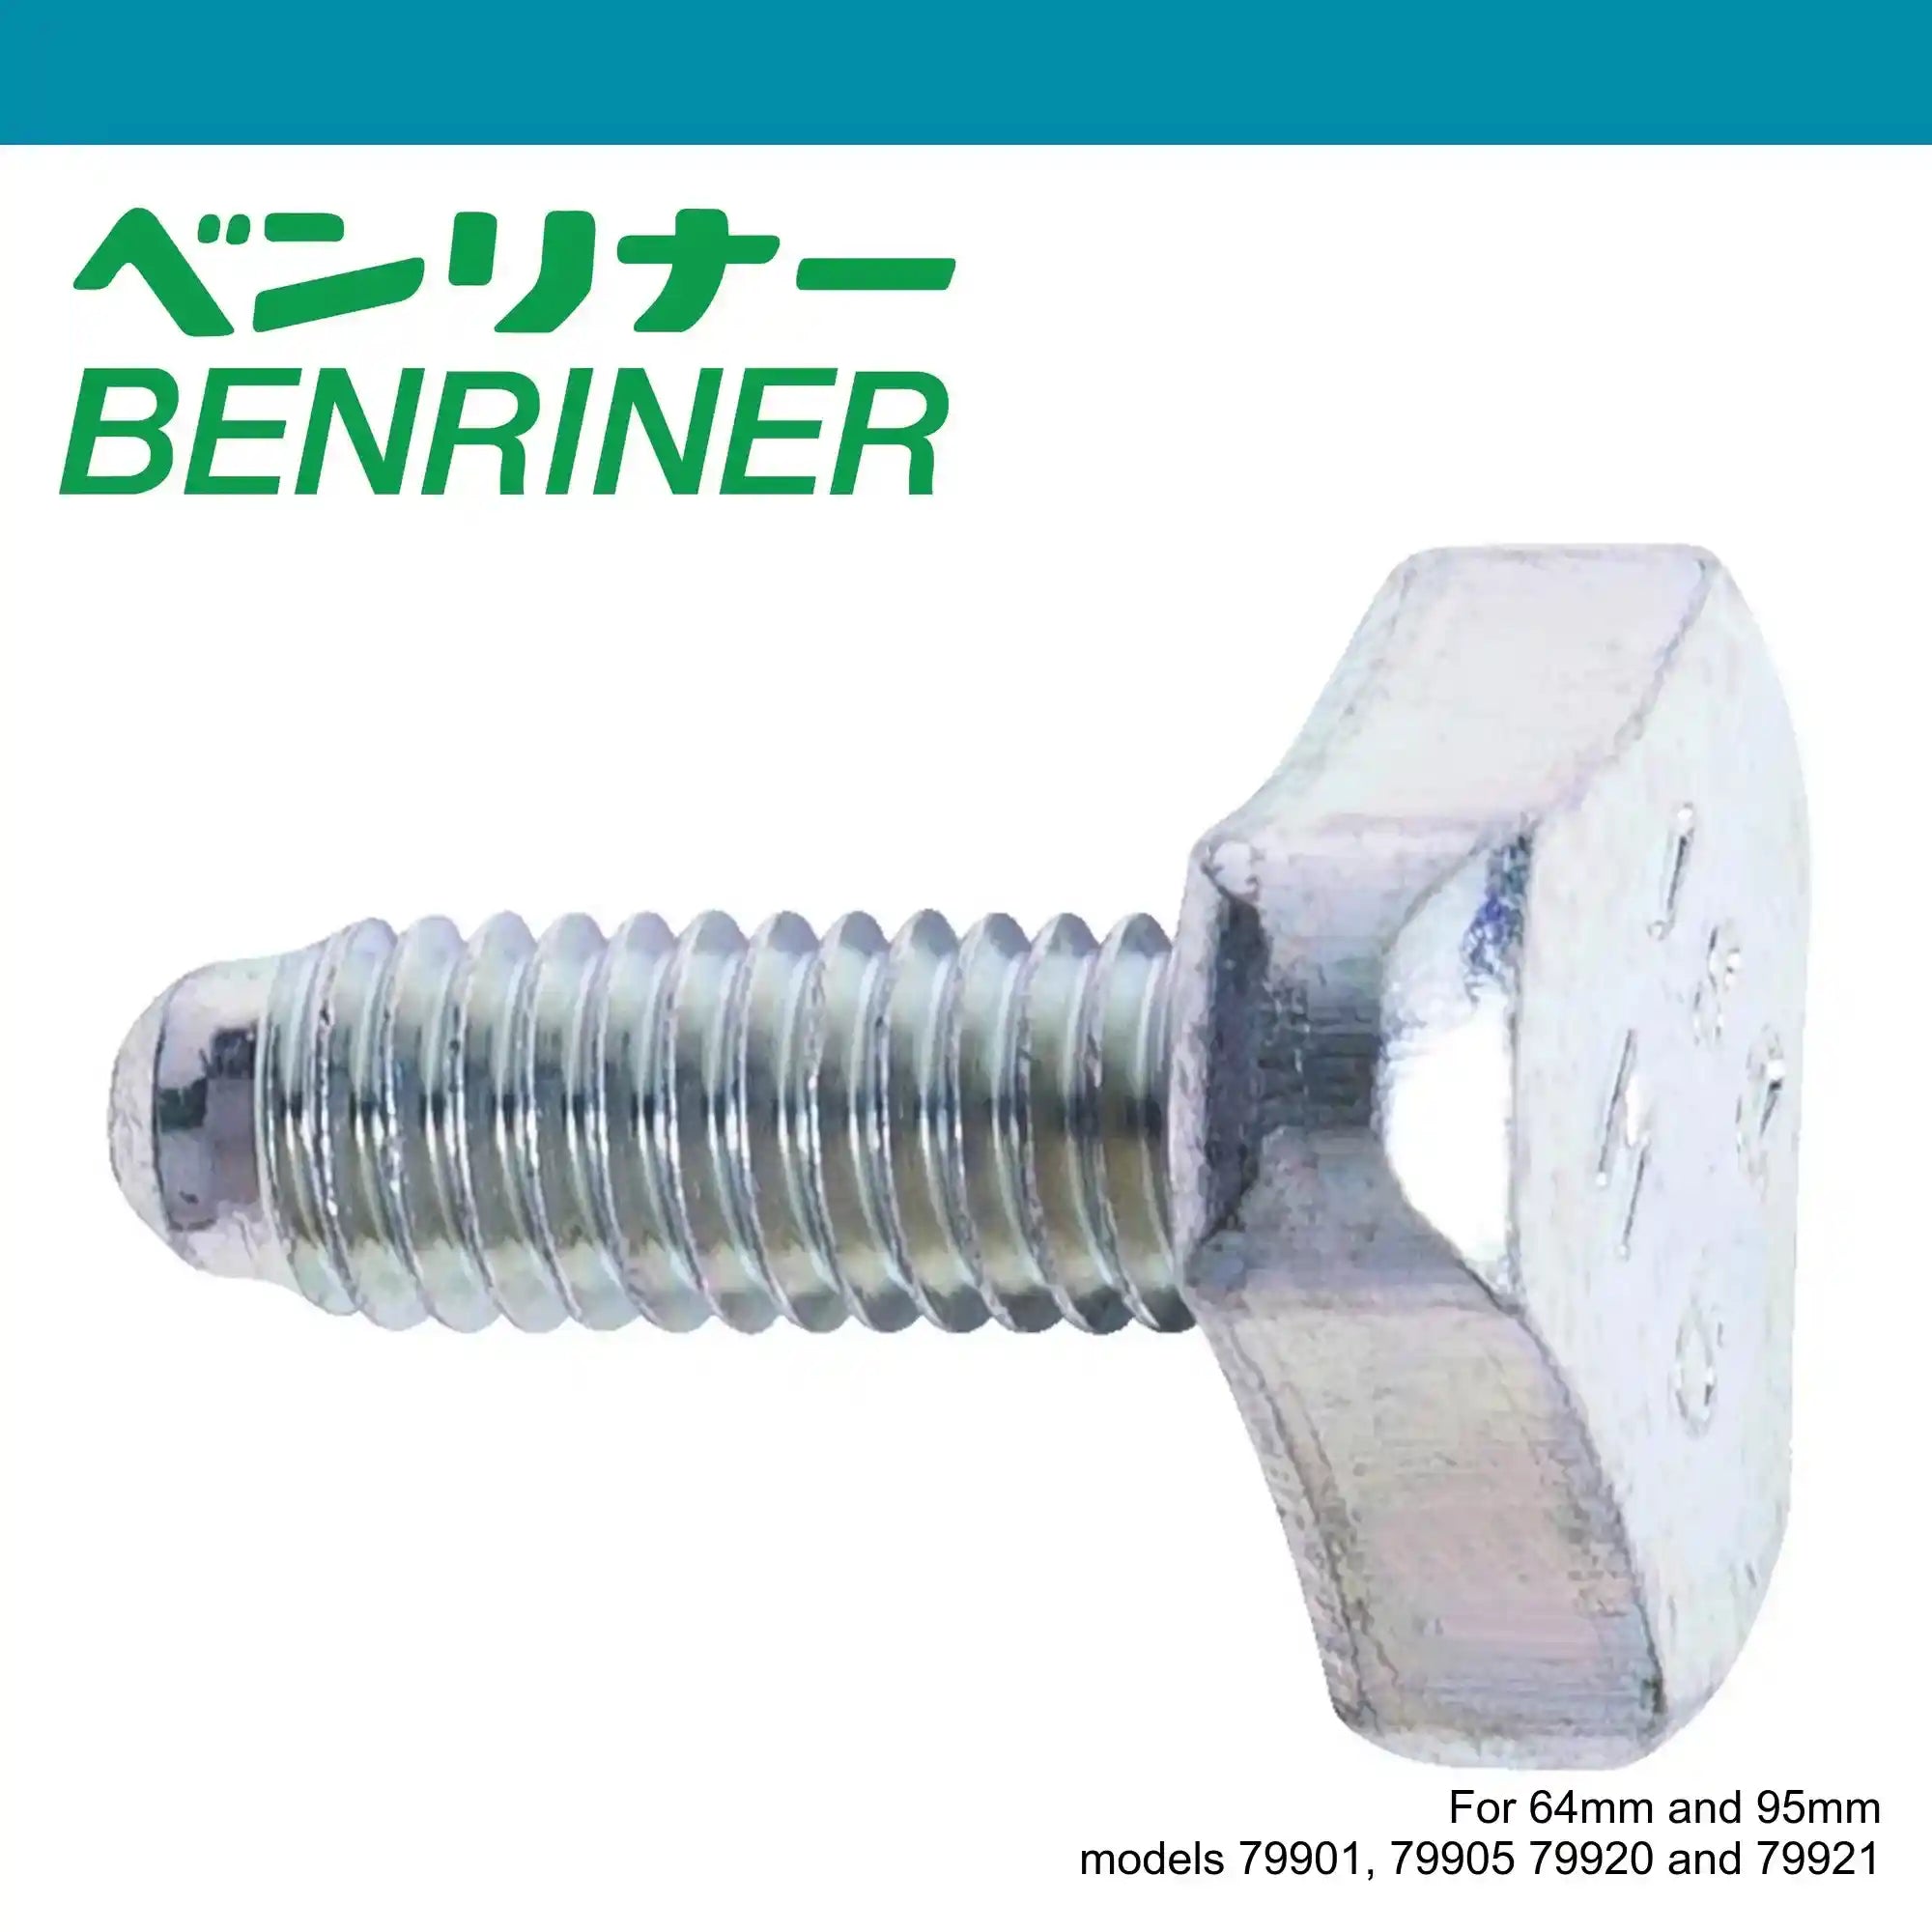 Benriner Parts Mandoline Replacement screw Tri-head